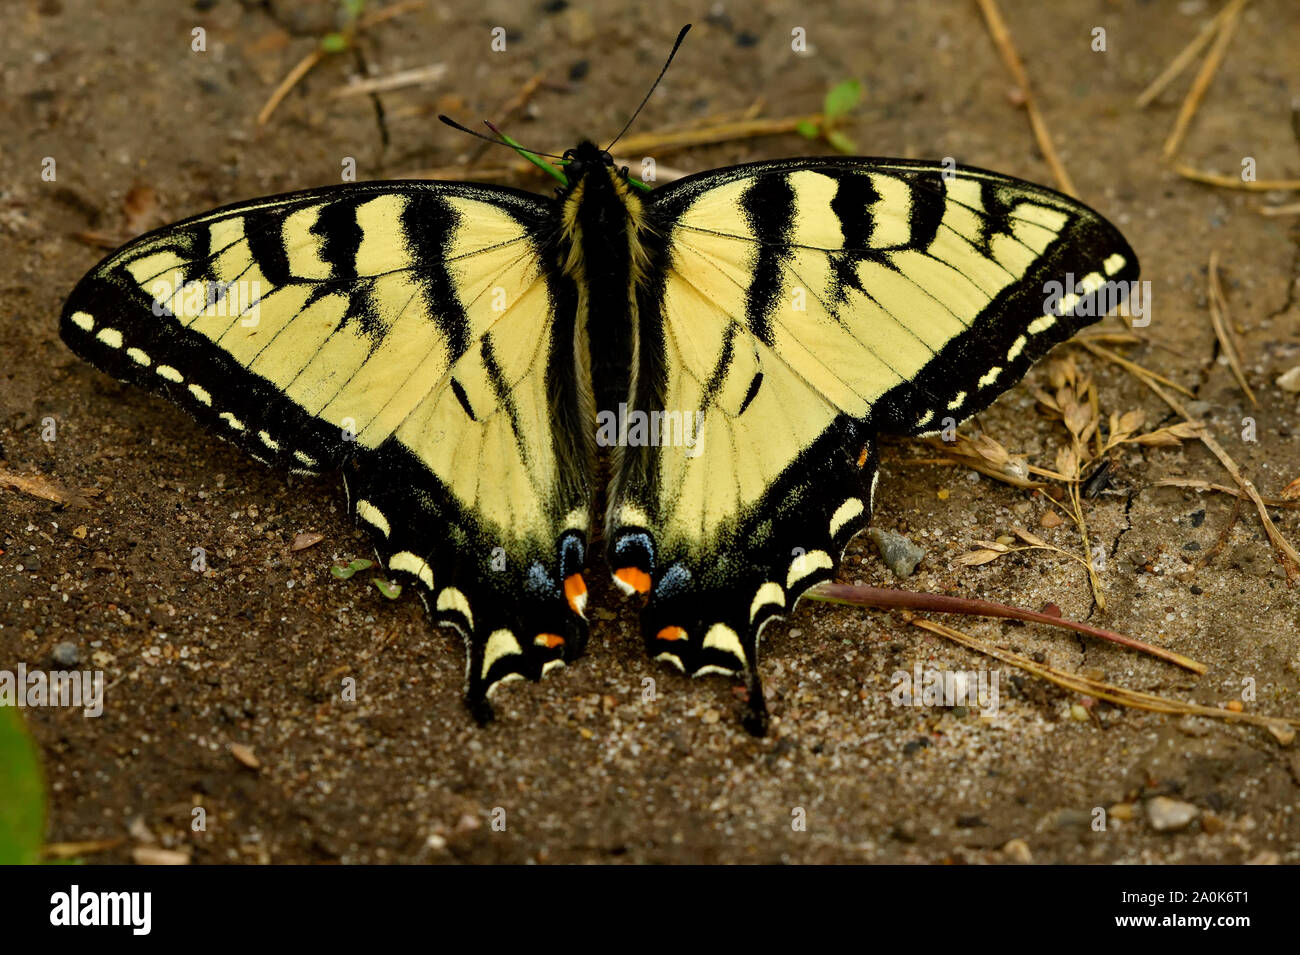 Una especie de mariposa de color amarillo y negro en el suelo con sus alas extendidas. Foto de stock